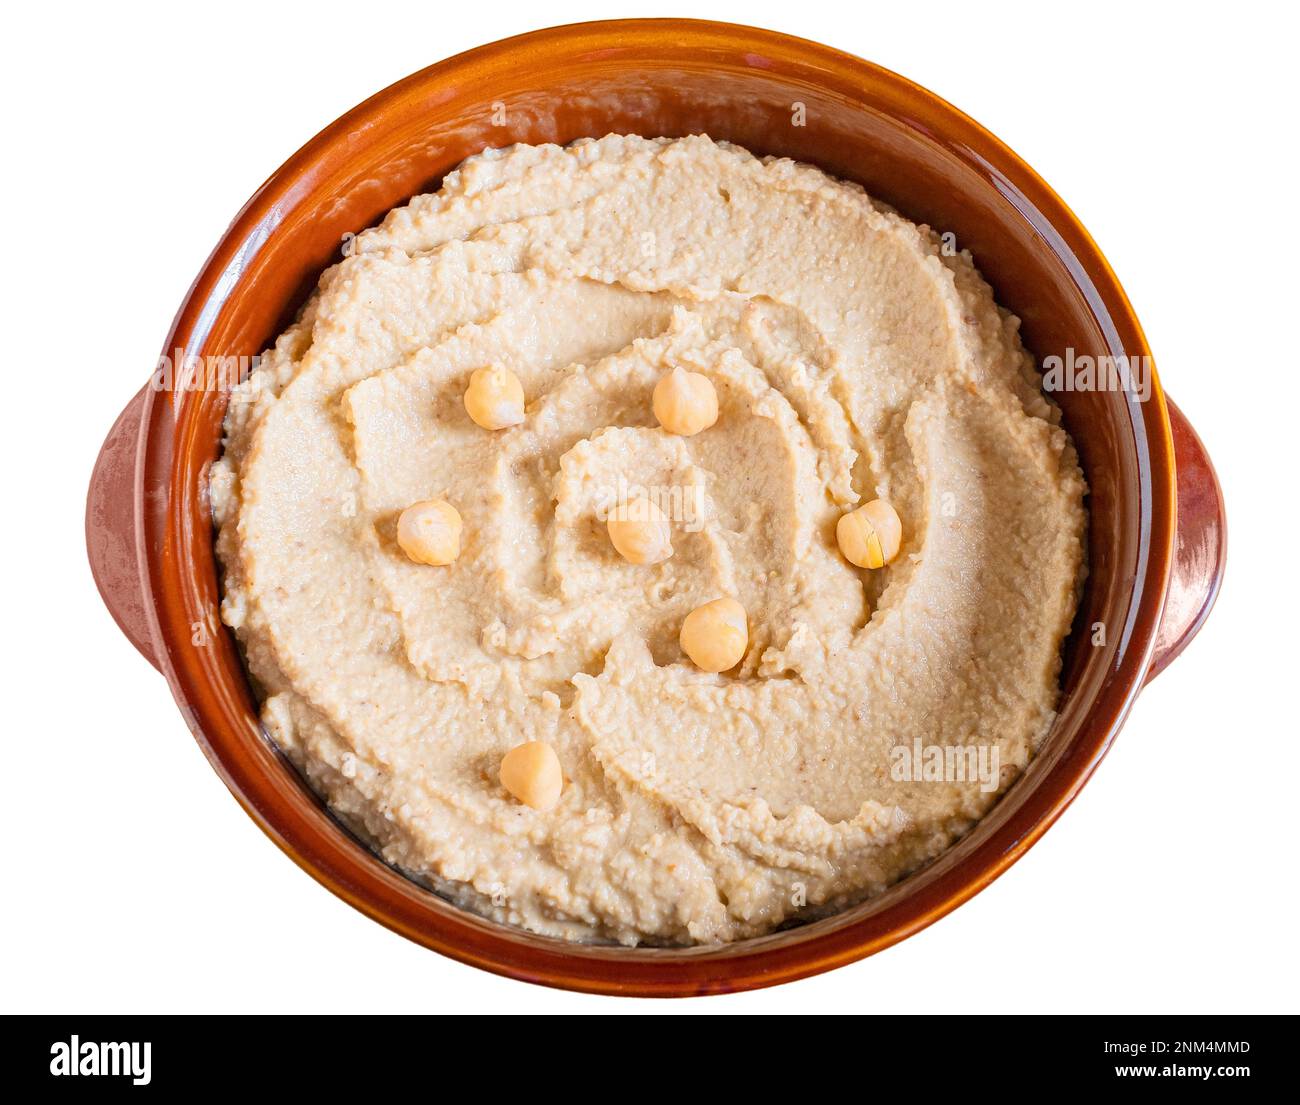 Ciotola di hummus fatta in casa, decorata con ceci bolliti su sfondo bianco Foto Stock